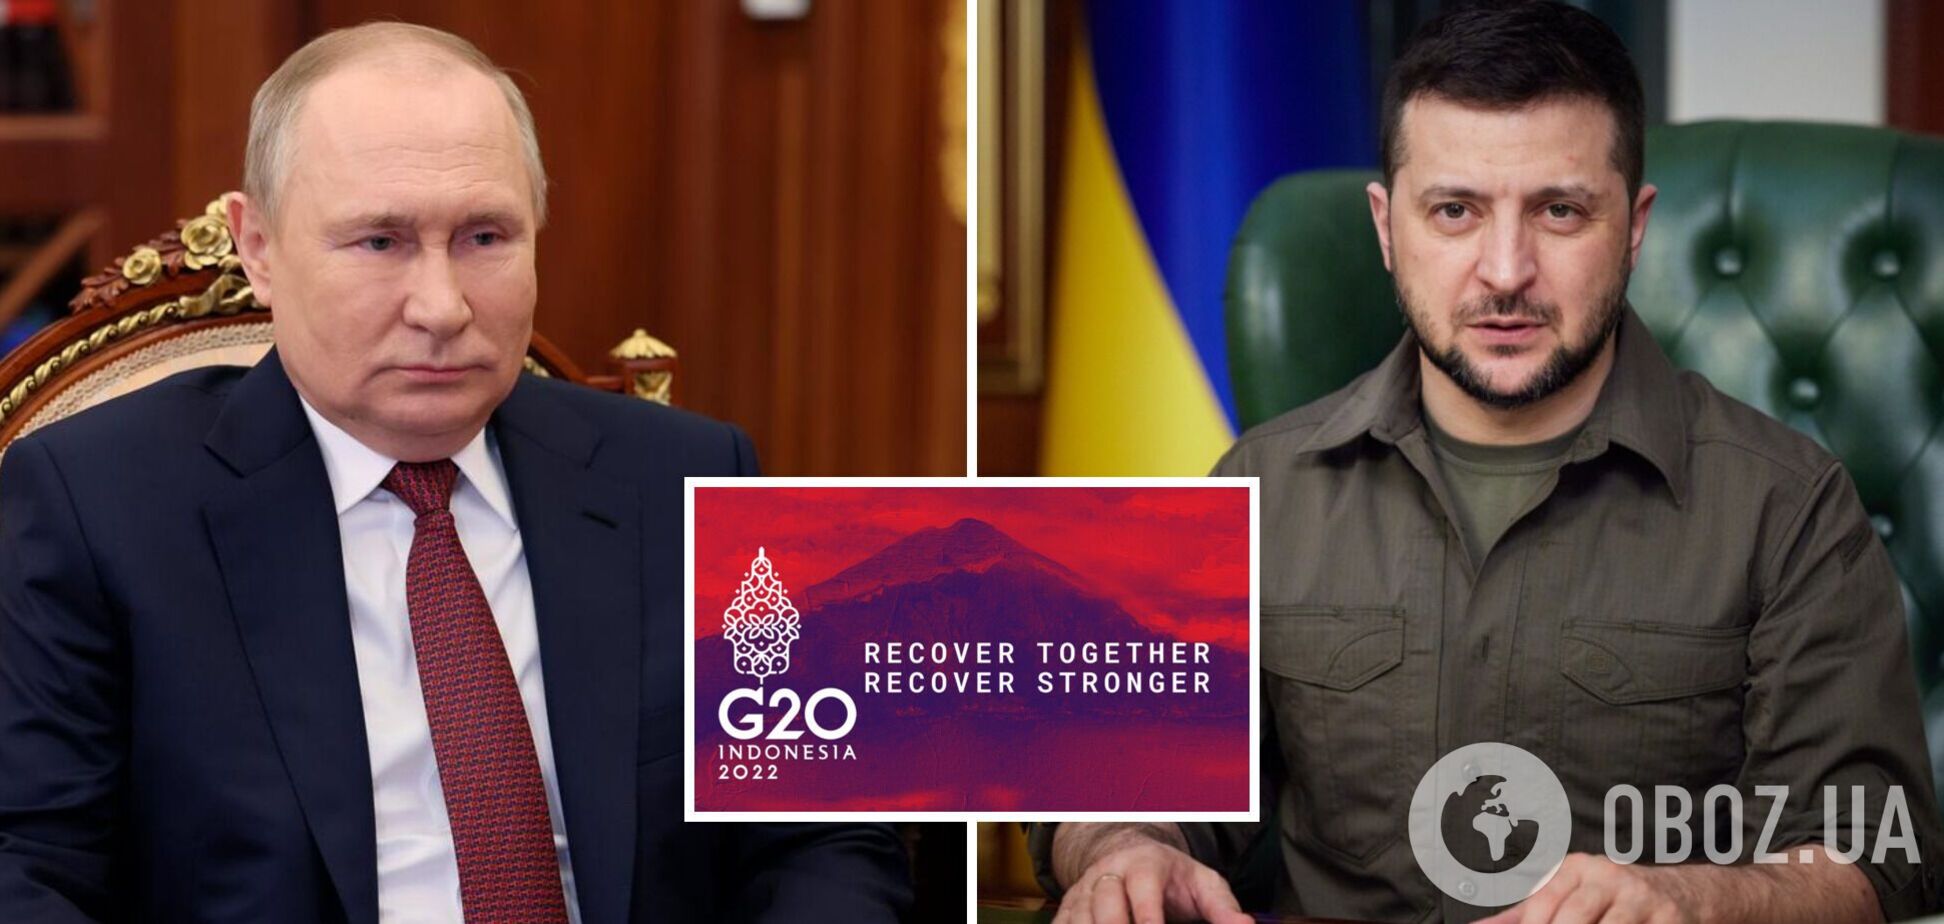 Где и когда состоится саммит G20 и действительно ли Зеленский там встретит Путина: все подробности